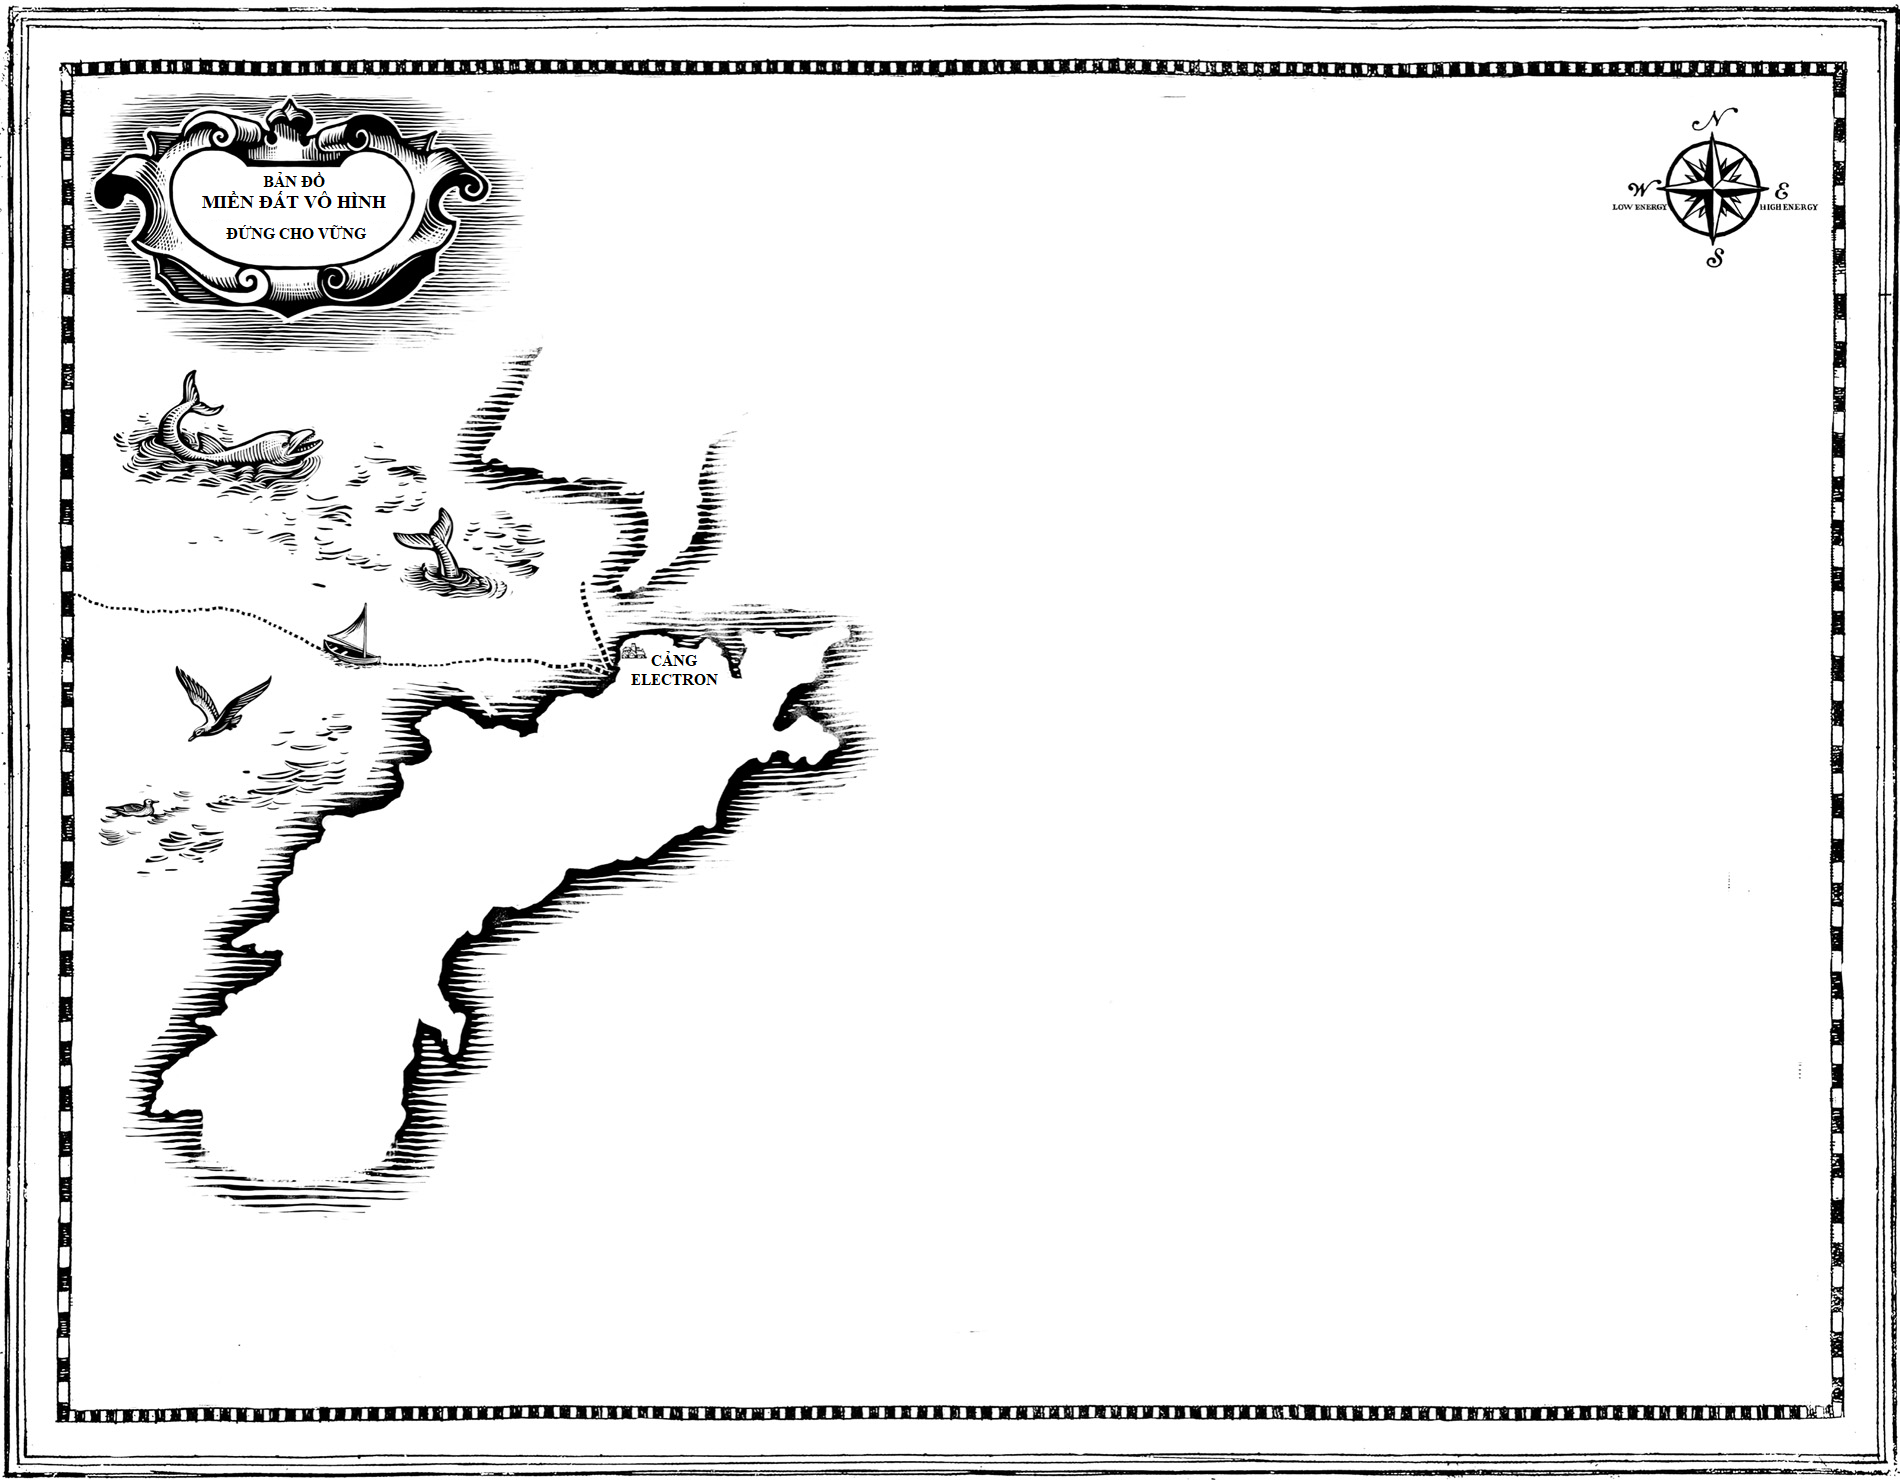 Bản đồ Miền đất Vô hình - Phần 2